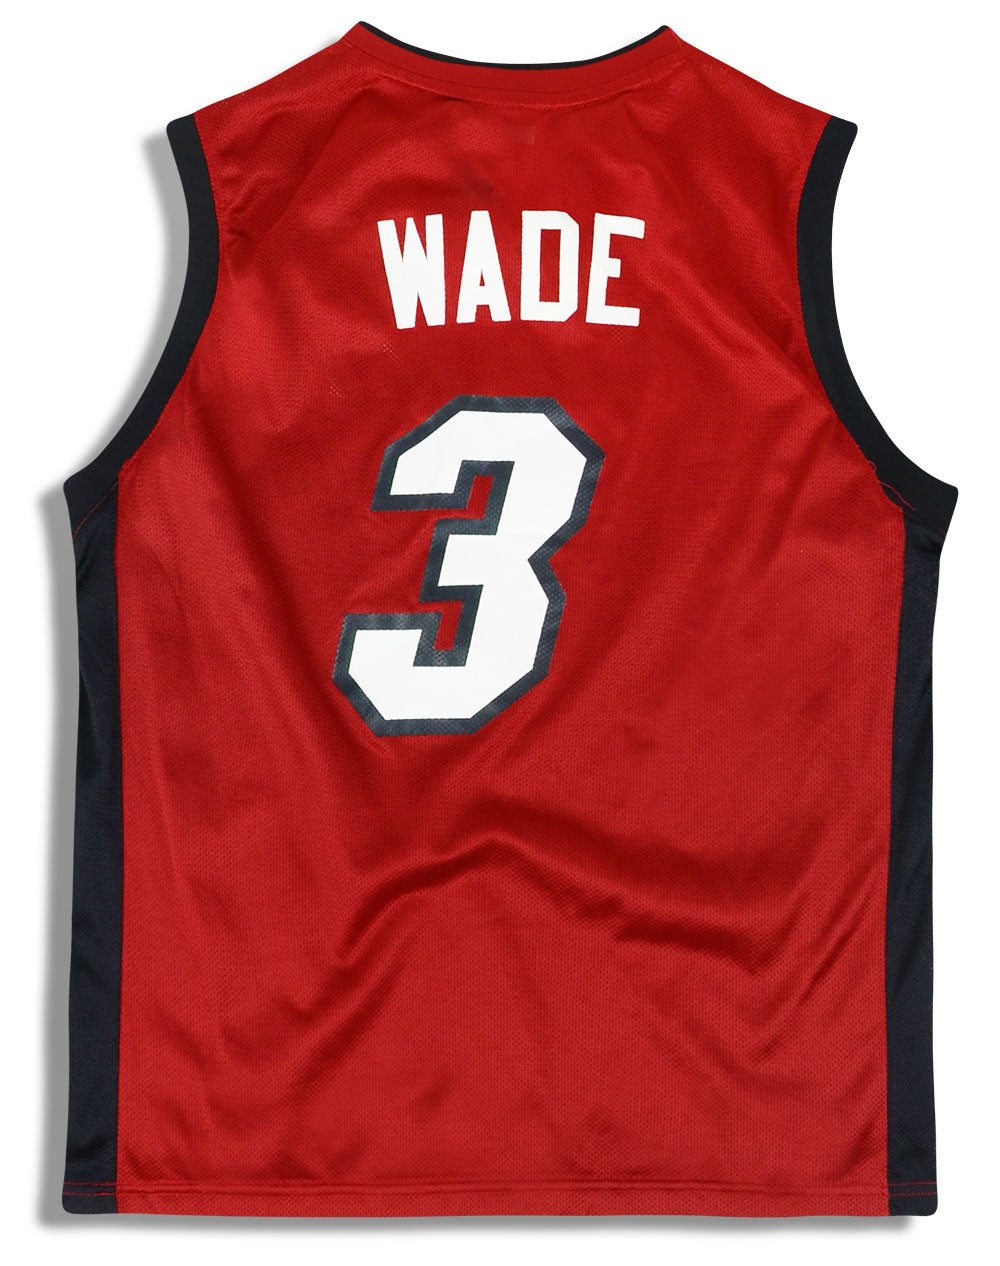 Miami Heat: Dwyane Wade 2006/07 White Adidas Stitched Jersey (L